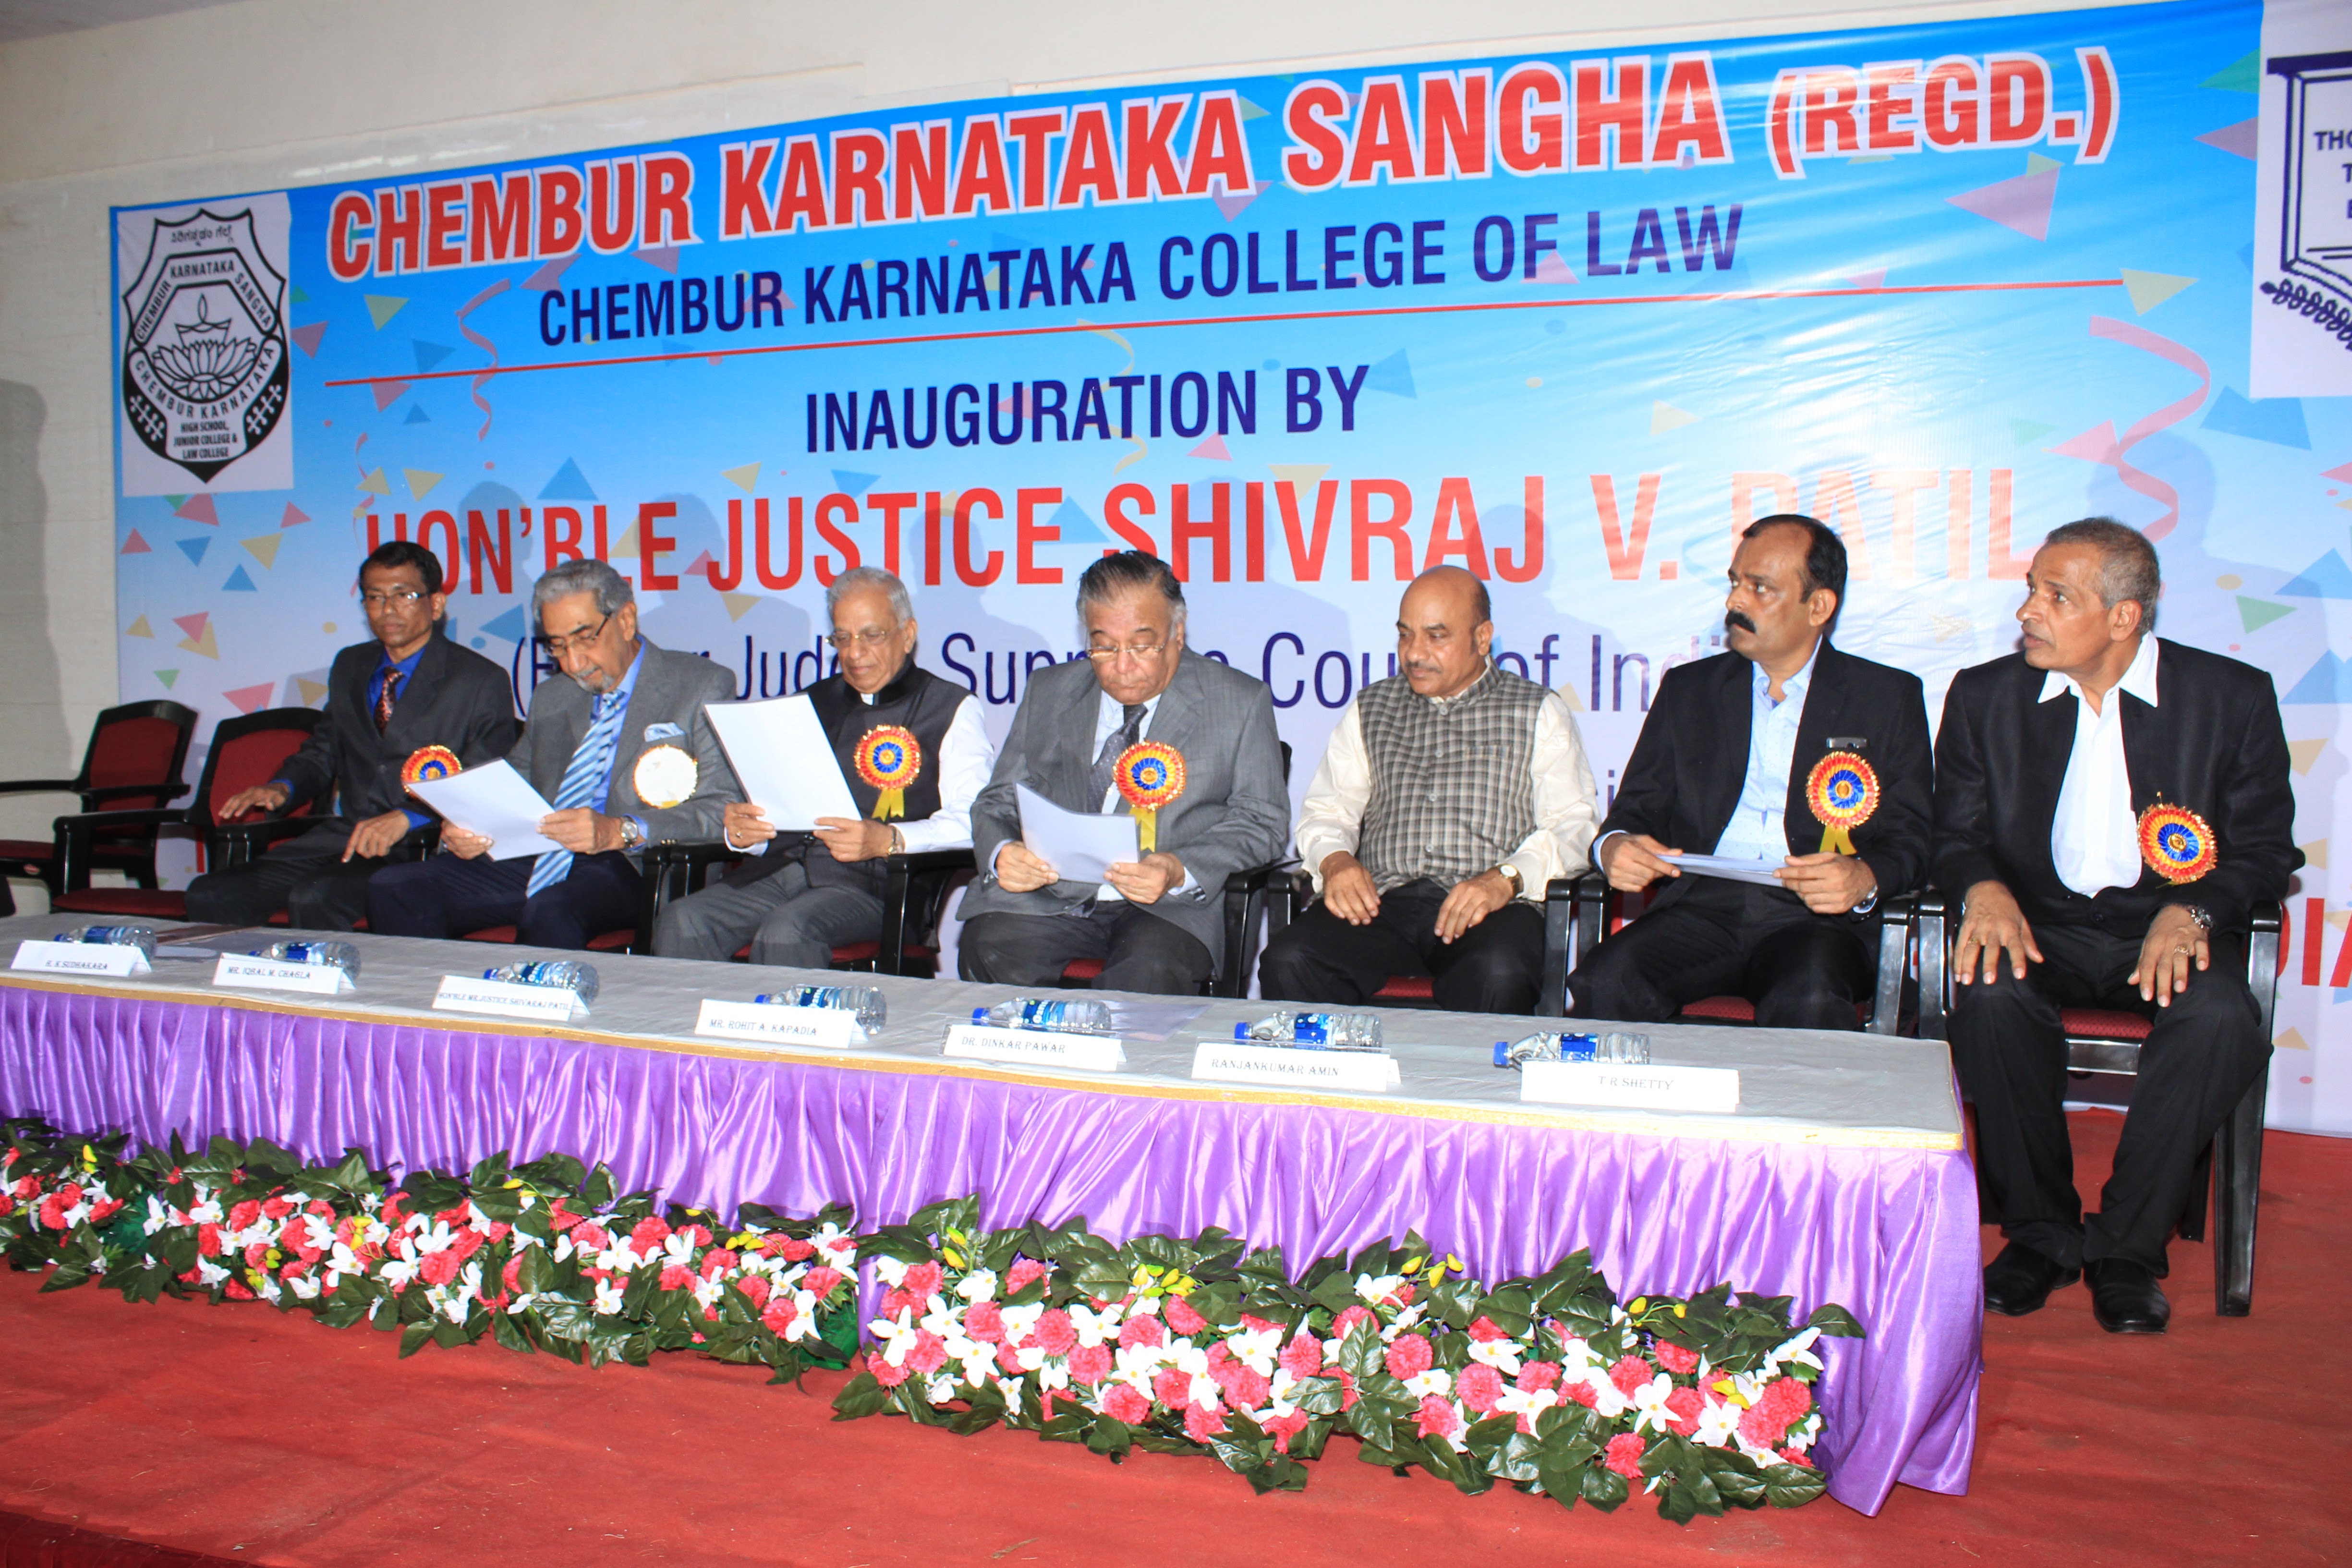 Chembur Karnataka College of Law, Mumbai